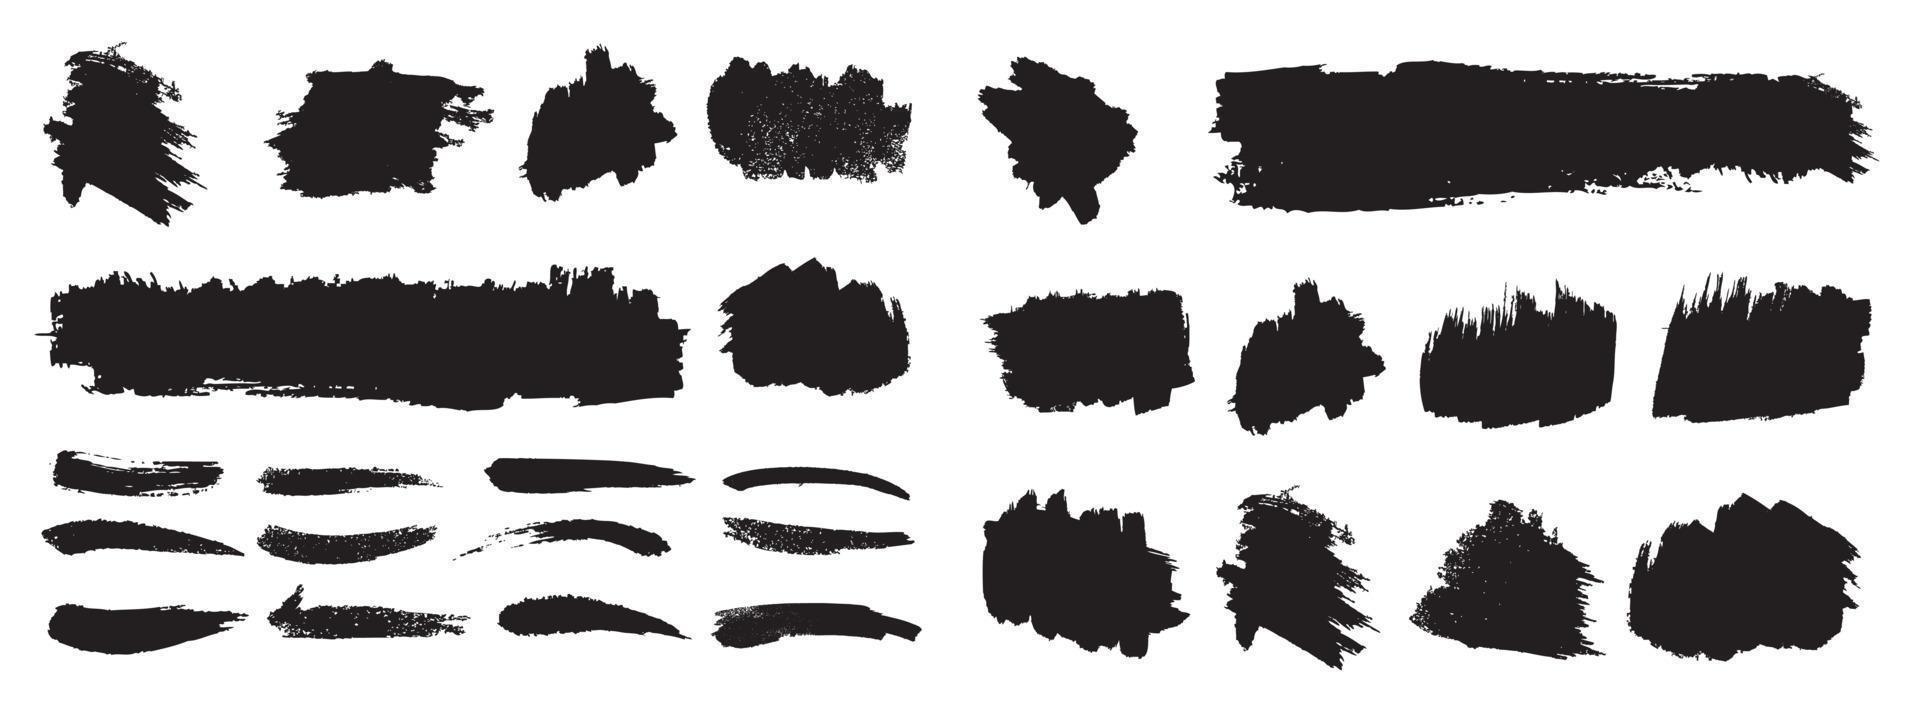 uppsättning av svart färg, bläck penseldrag vektor